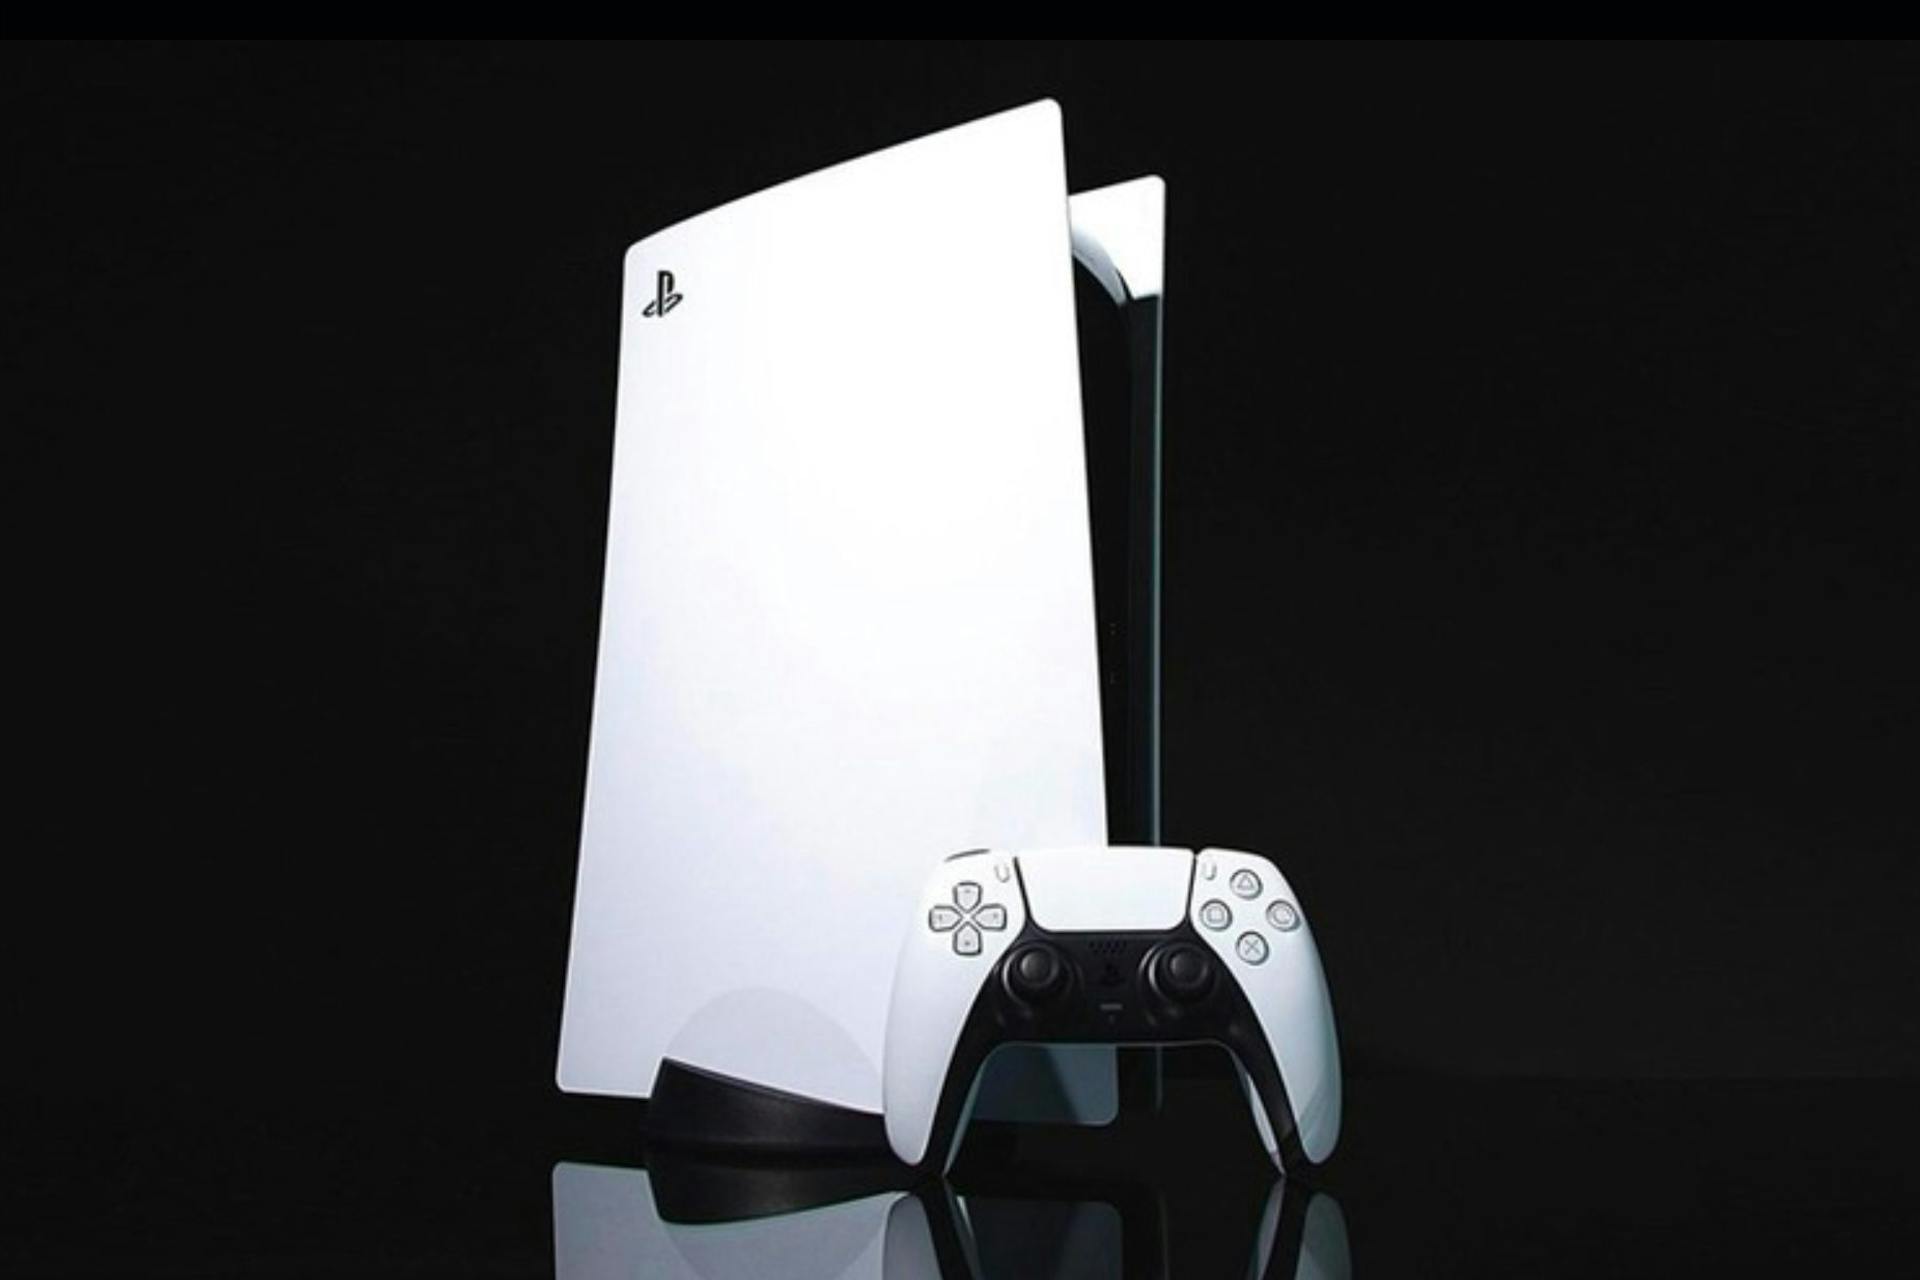 Sony Original God Of War PS5 Controller For PlayStation 5 – Stark Setup